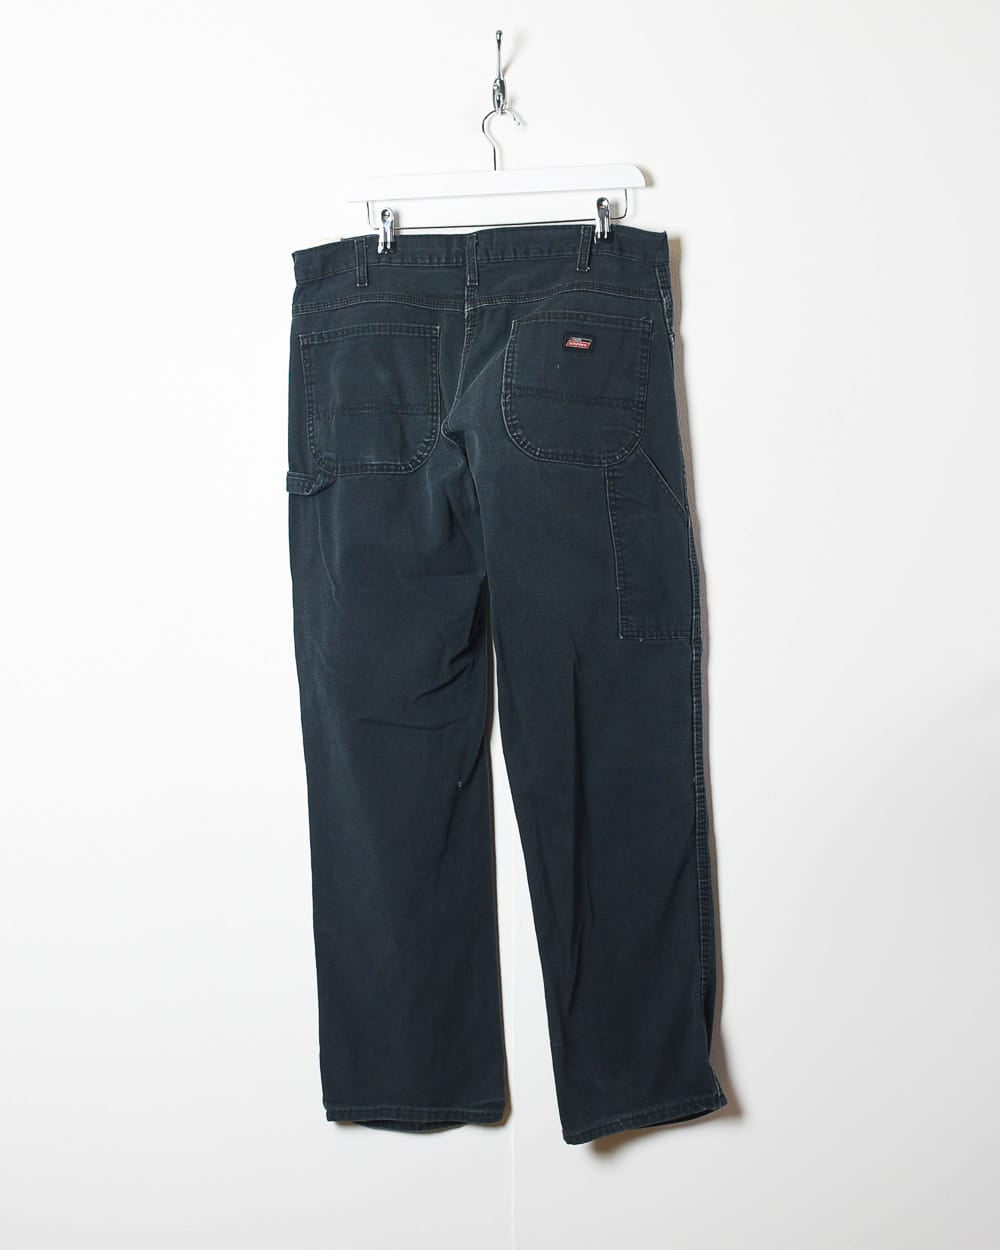 Black Dickies Carpenter Jeans - W36 L32